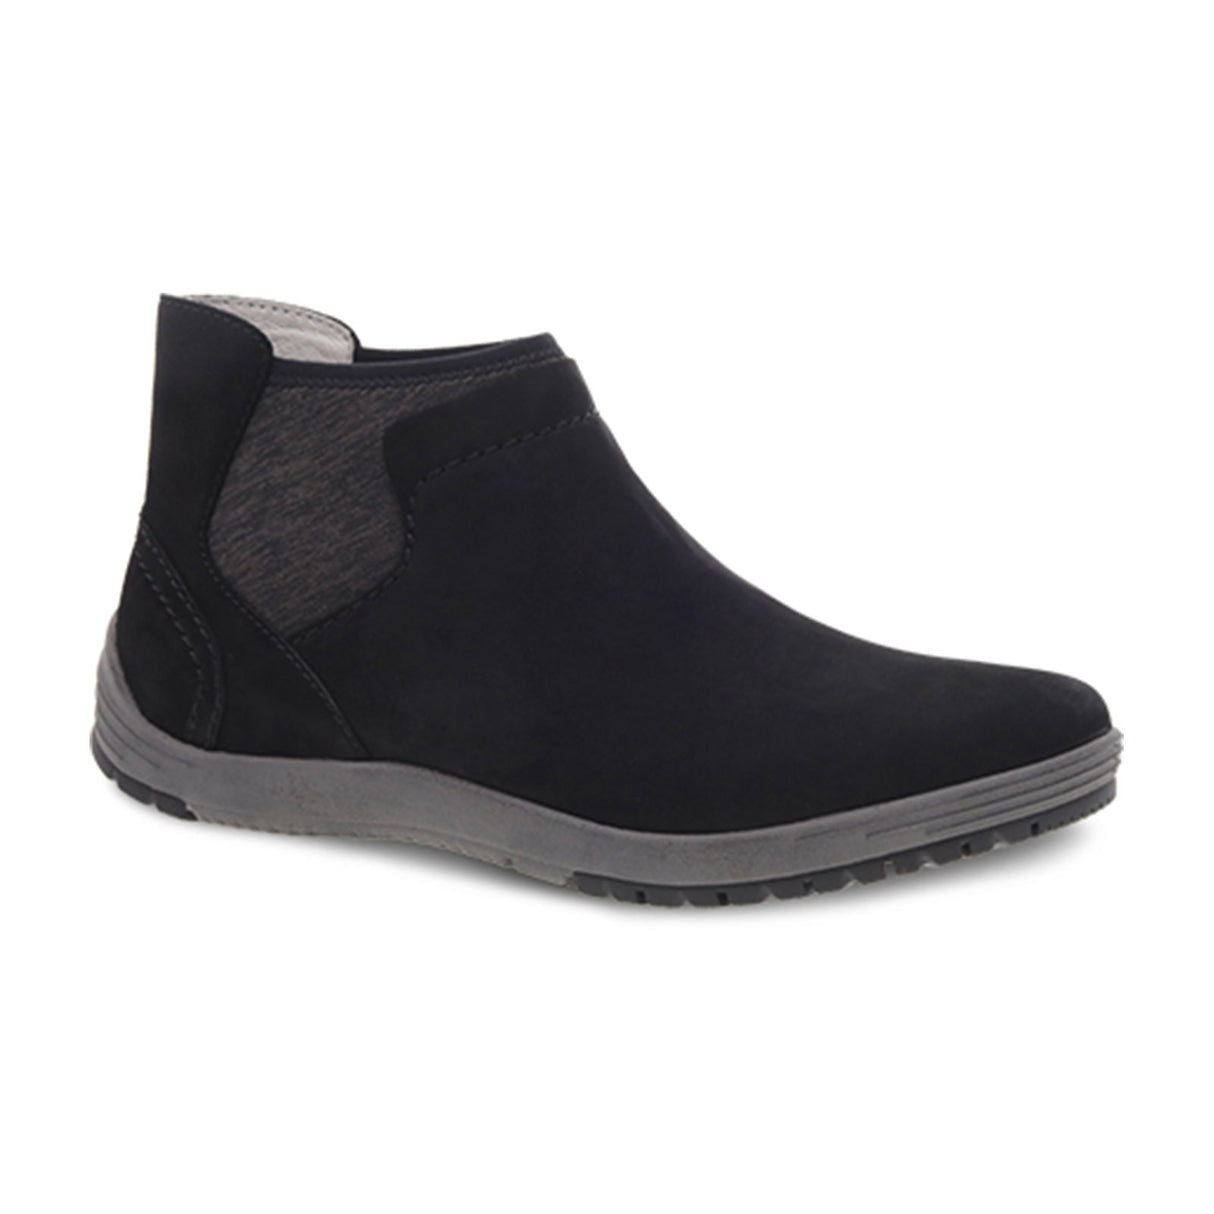 Dansko Lizette Ankle Boot (Women) - Black Waterproof Nubuck Boots - Fashion - Ankle Boot - The Heel Shoe Fitters